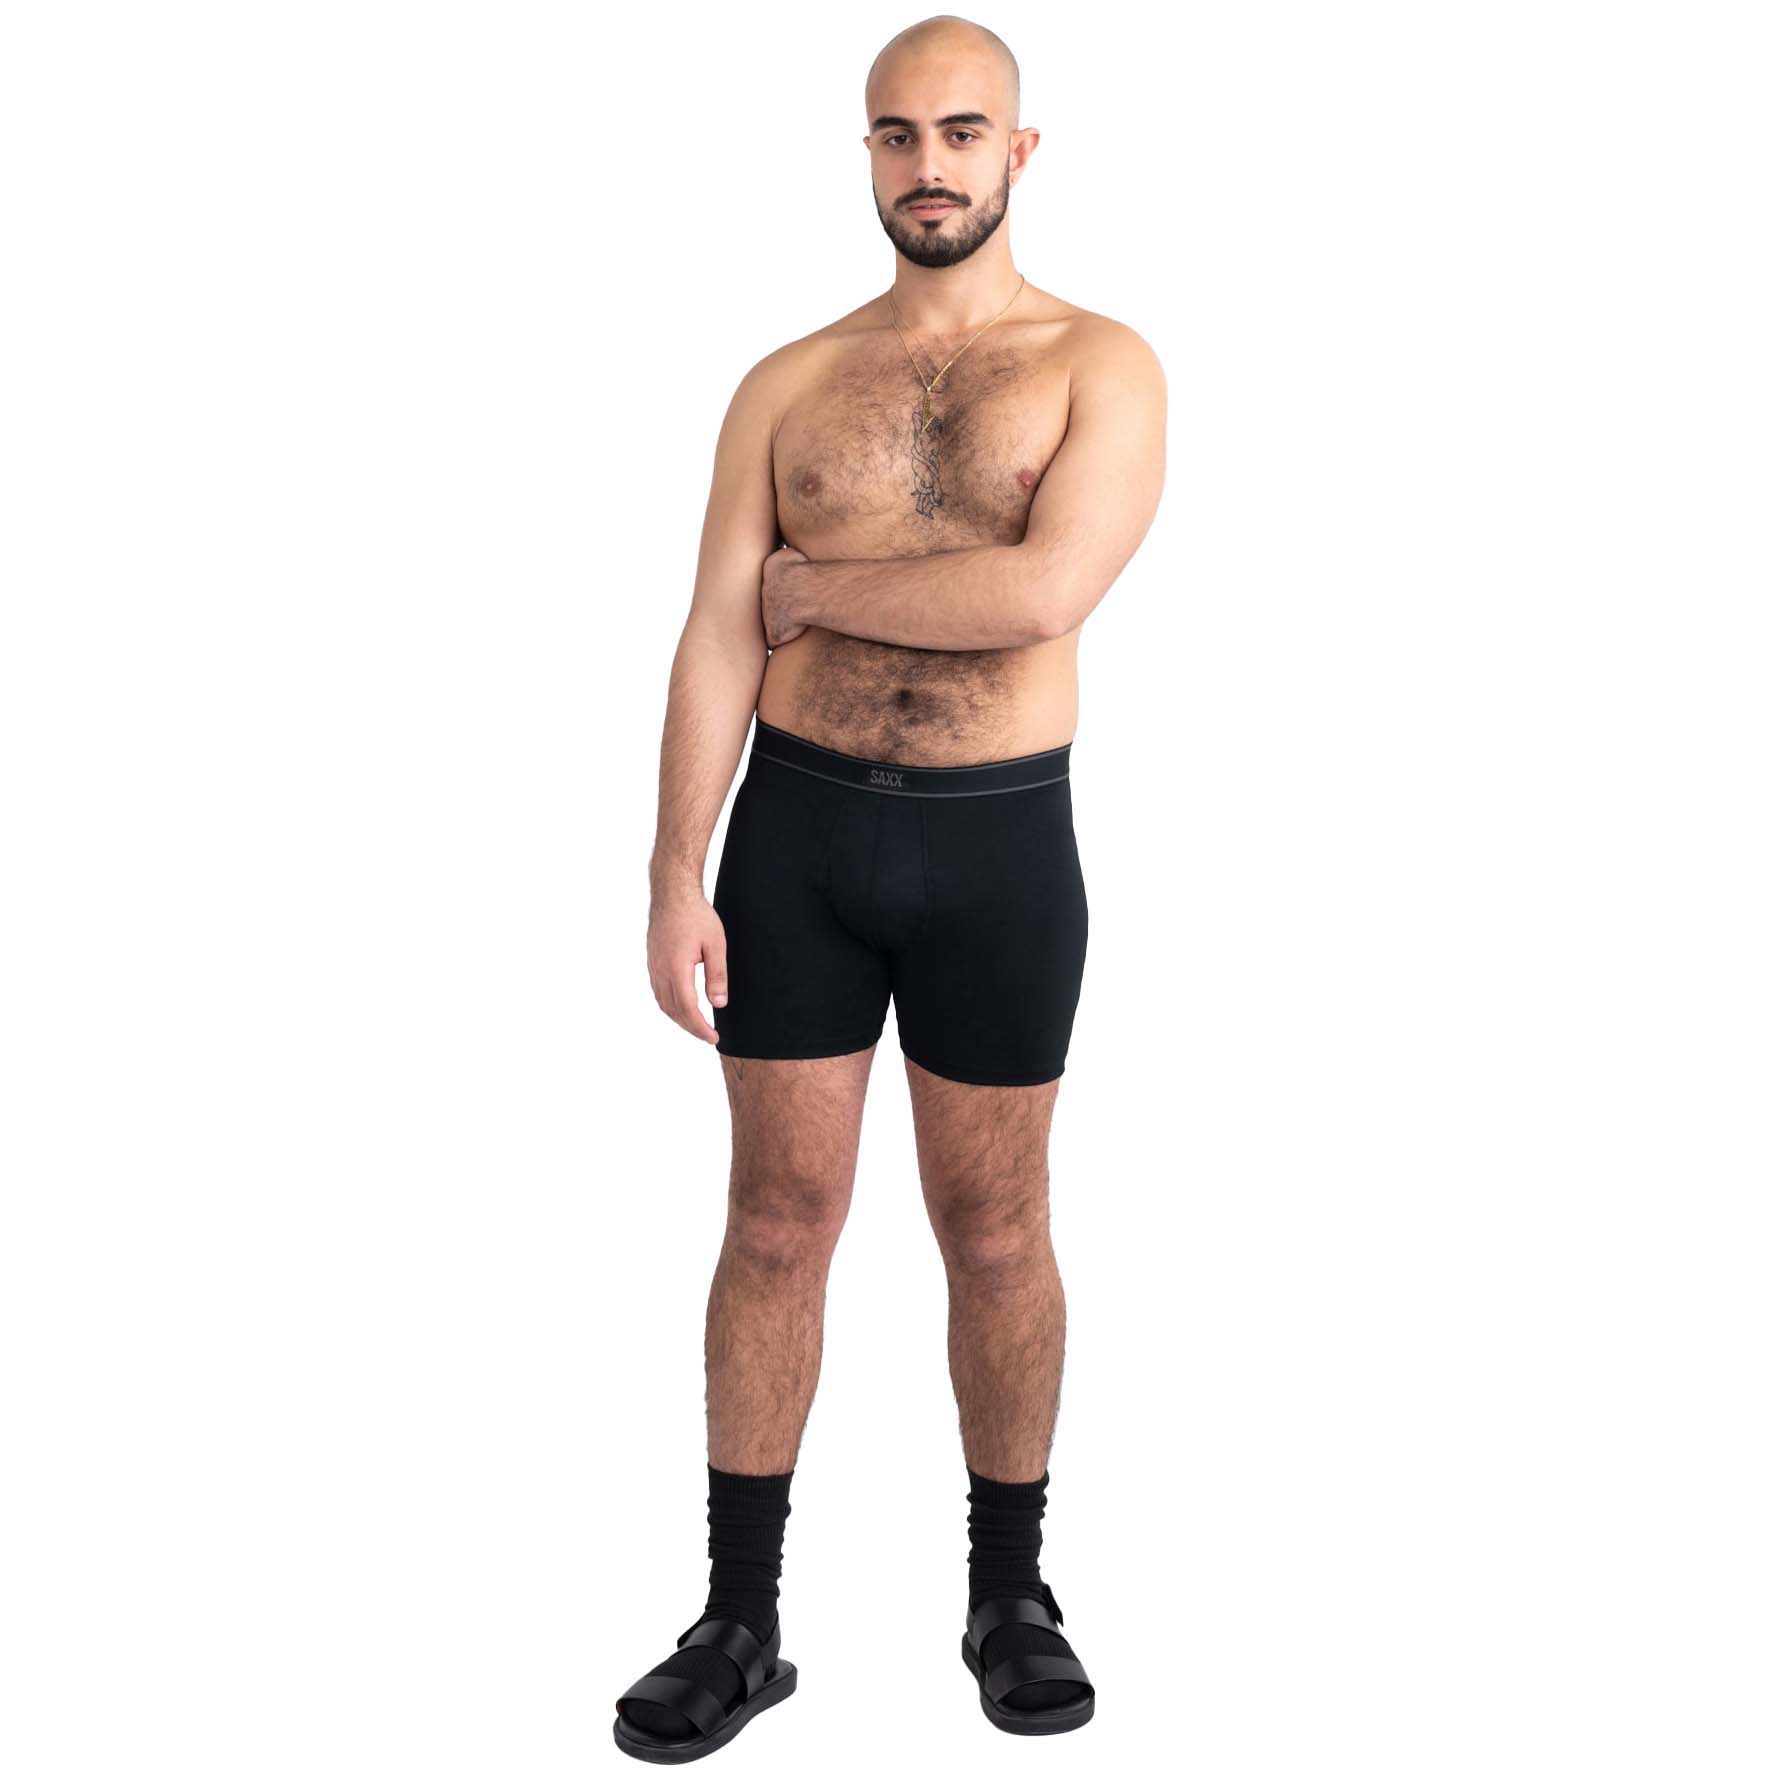 Saxx Daytripper Boxer Brief Fly Men's Underwear